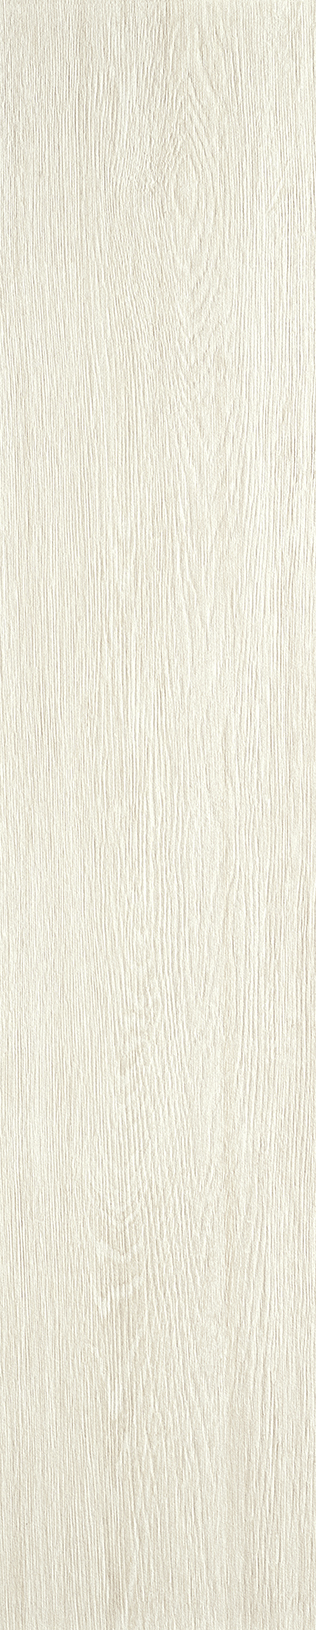 Lovetiles Timber White Antislip B6090002001K antislip 20x100cm 8mm